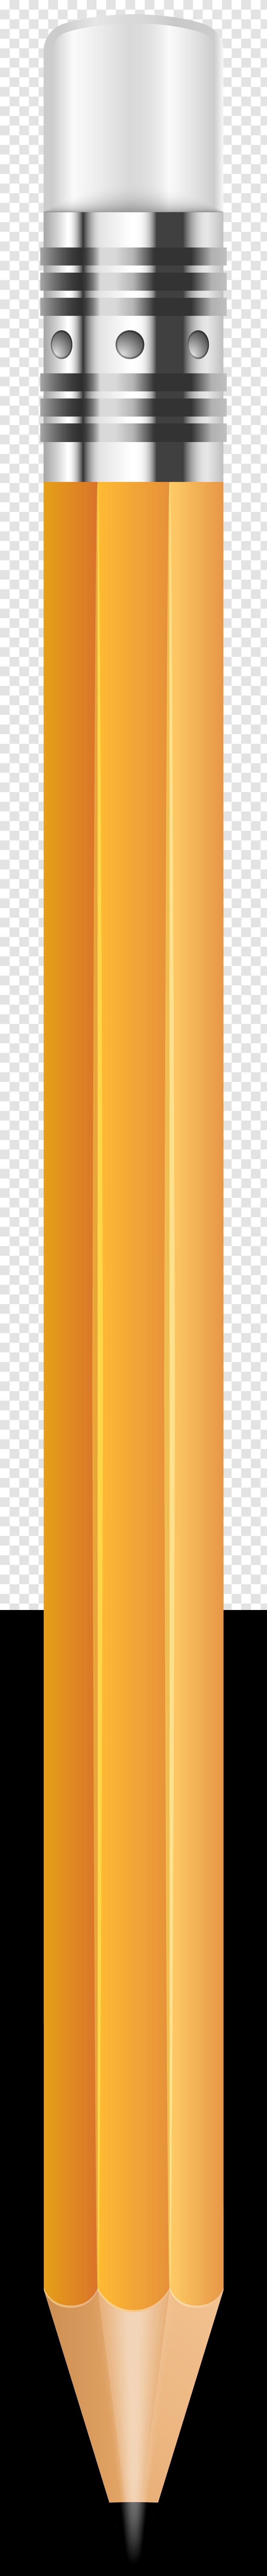 Cylinder Product Design - Orange - Pencil Clip Art Image Transparent PNG